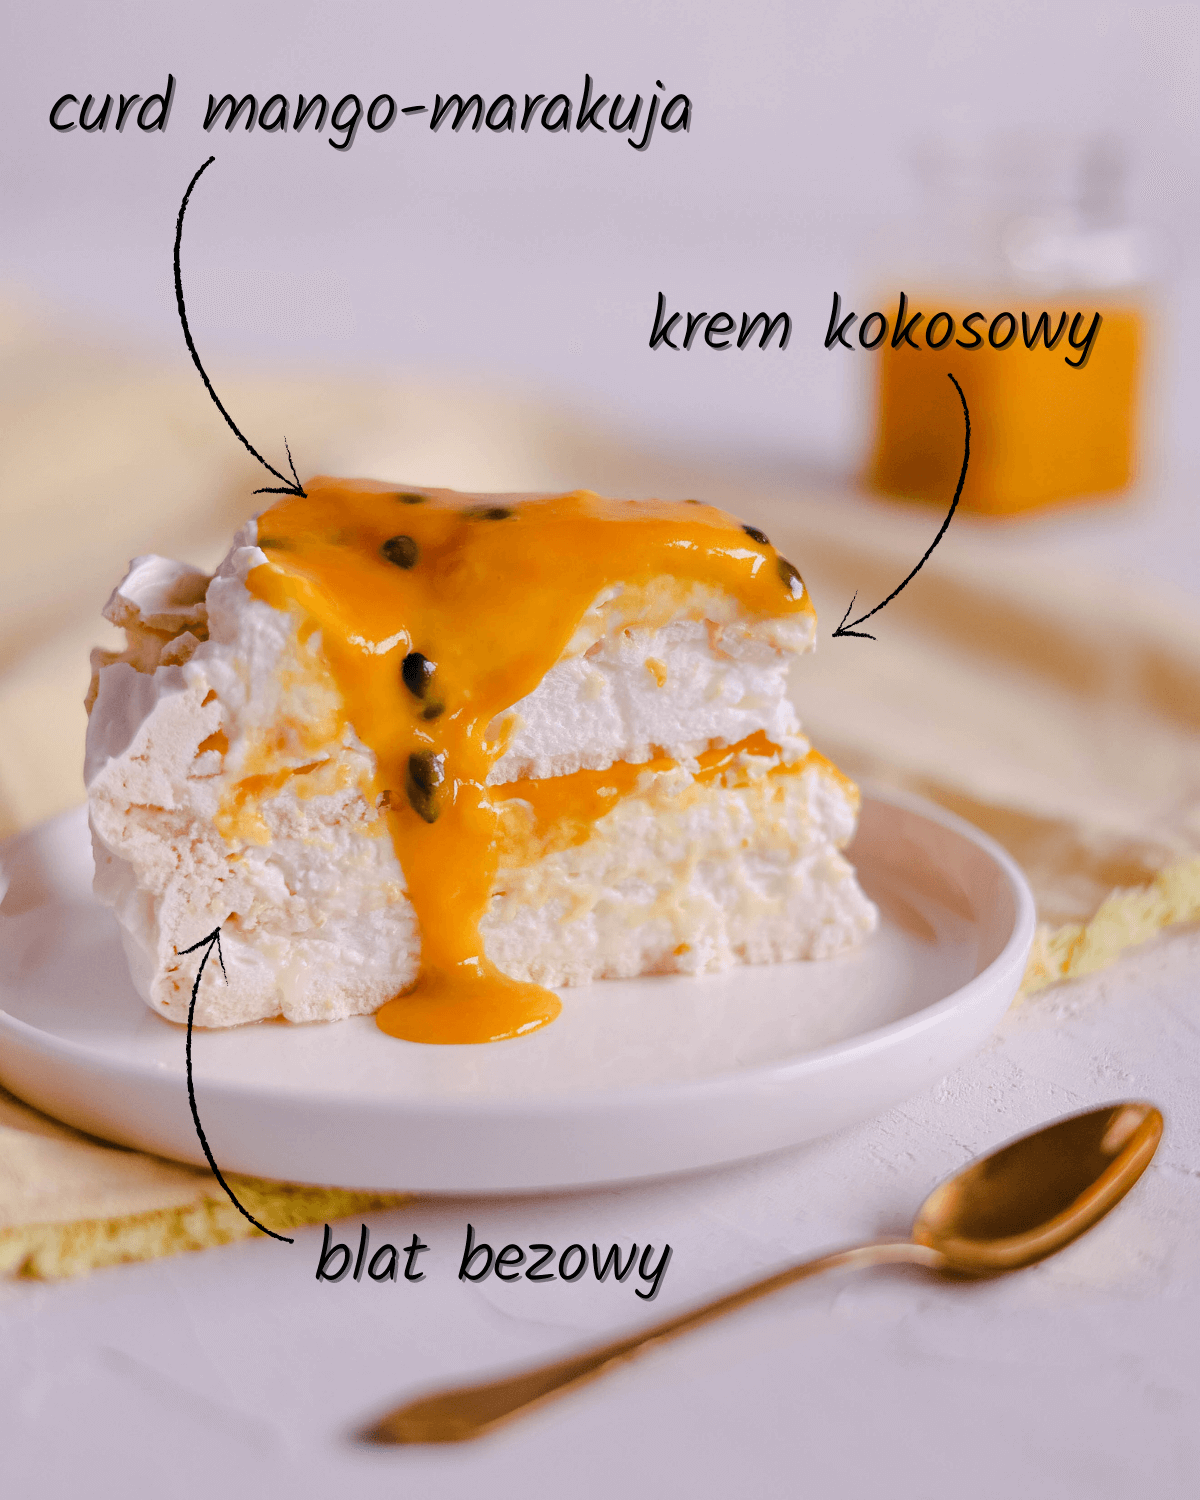 Egzotyczny tort bezowy z kremem kokosowym i curdem mango-marakuja